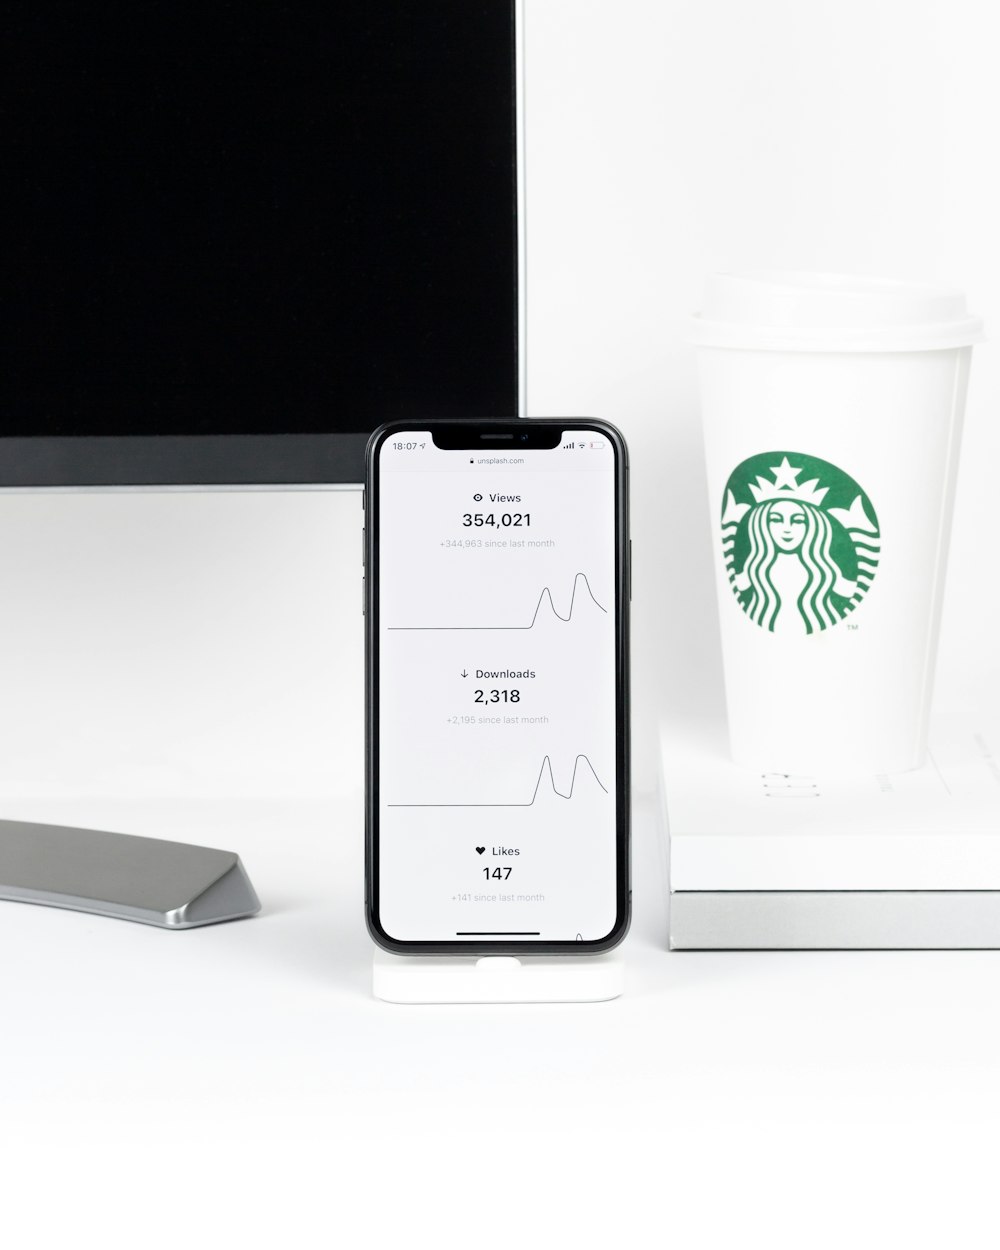 iPhone X accanto alla tazza usa e getta Starbucks sulla scrivania